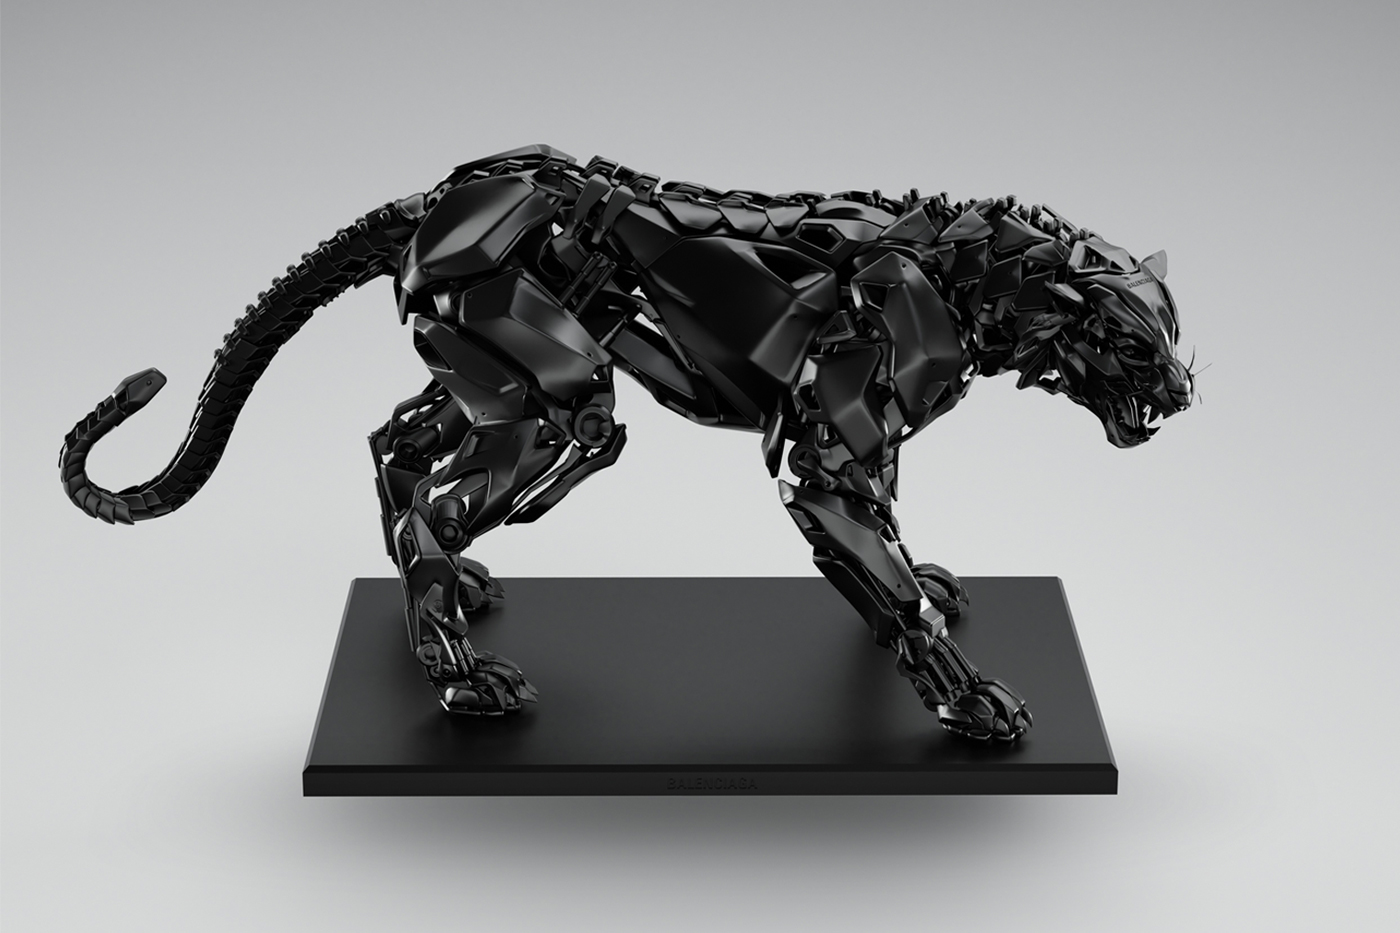 Balenciaga เปิดตัวไอเท็มใหม่ในไลน์ "Object" เป็นประติมากรรมเสือจักรกลต้อนรับปีเสือ